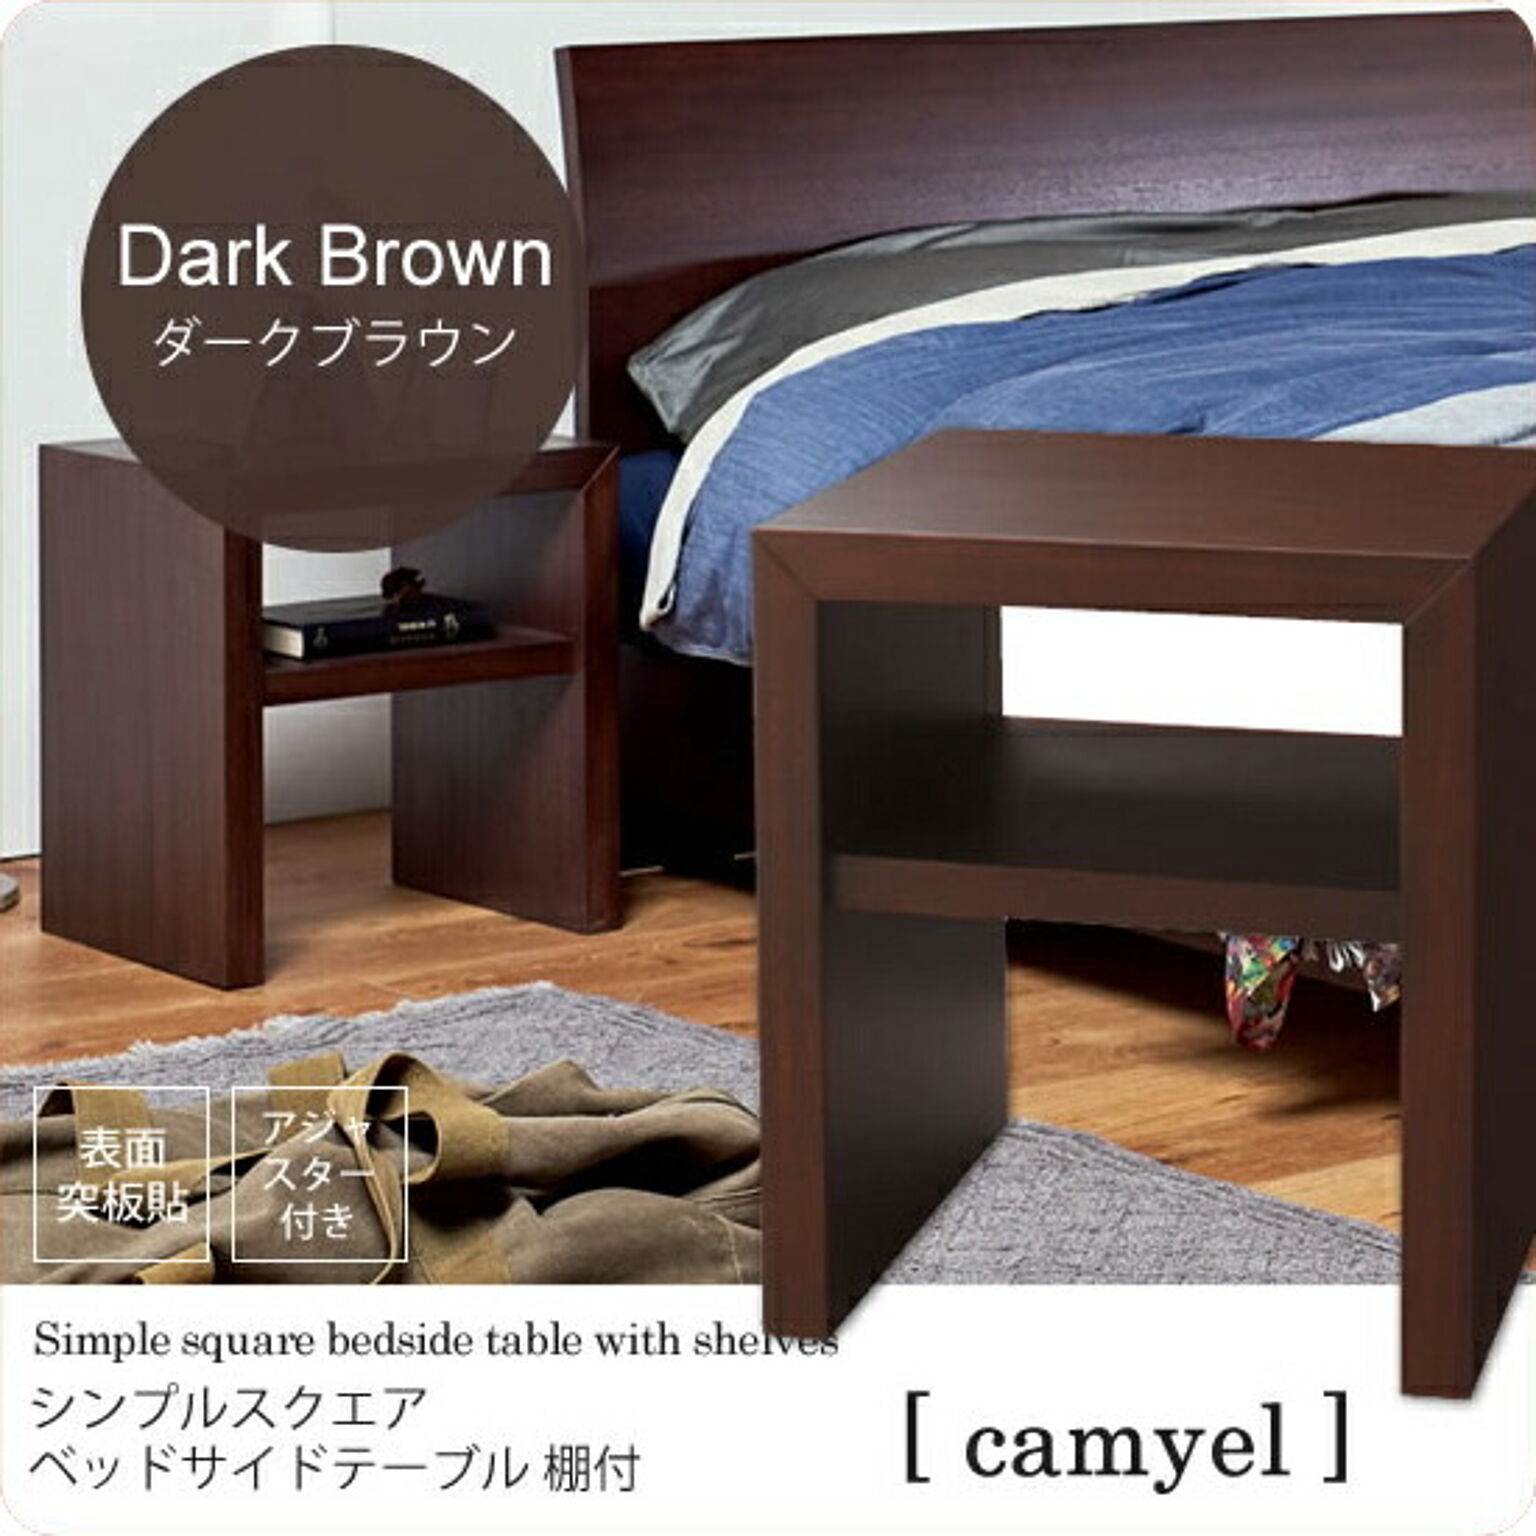 ☆値下げ中☆ IKEA TRYSIL ベッドサイドテーブル ダークブラウン